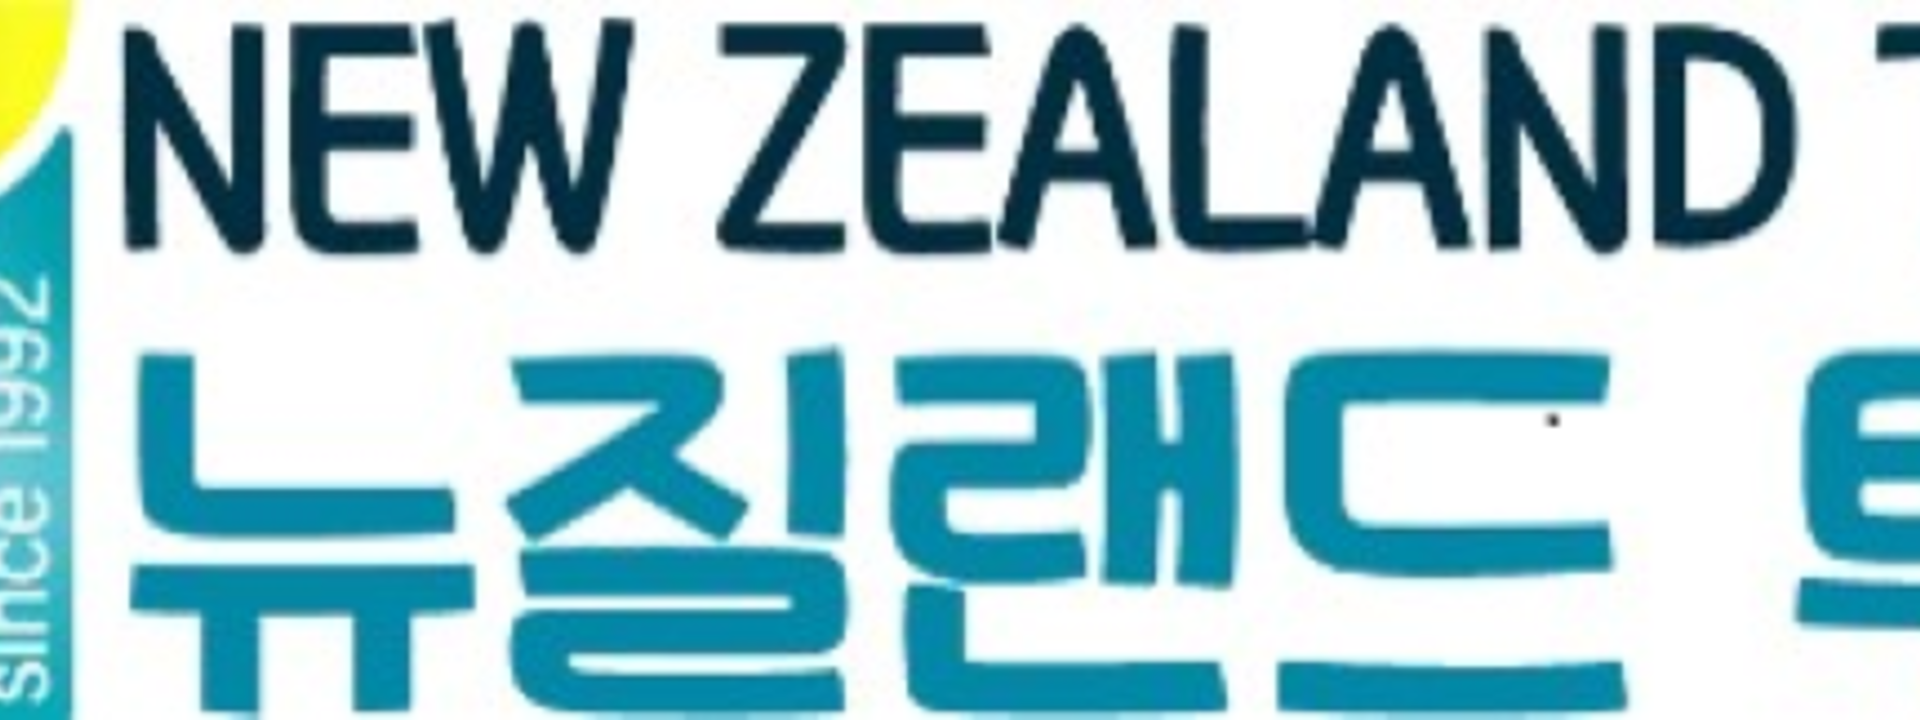 New Zealand Tour logo-1.png